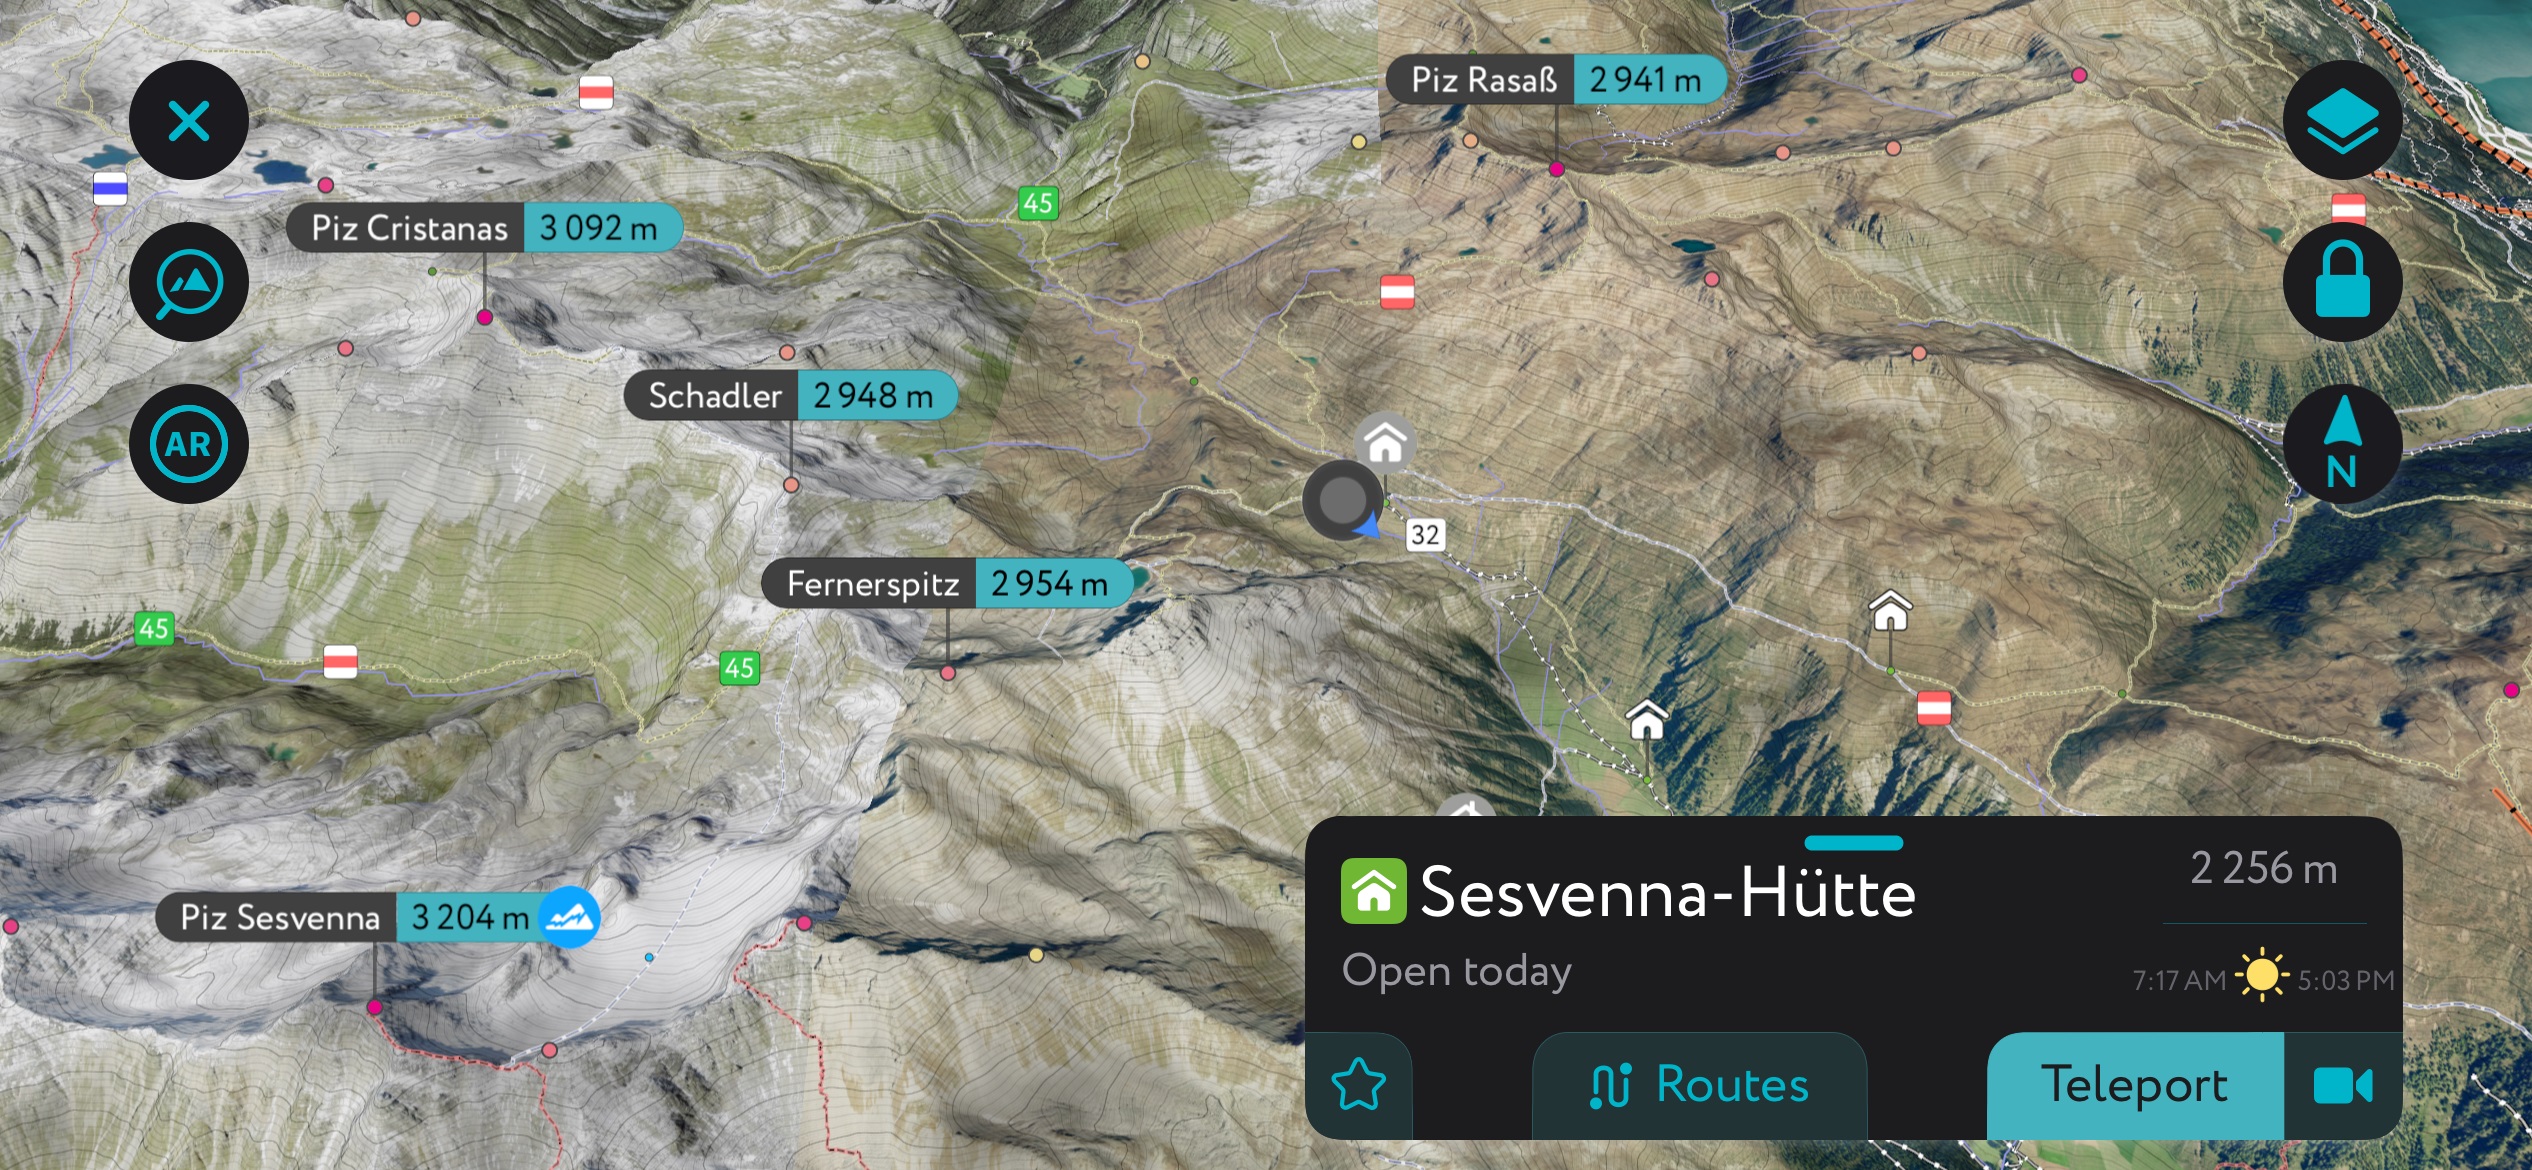 The Sesvennahütte on the PeakVisor Mobile App. Sesvenna Alps